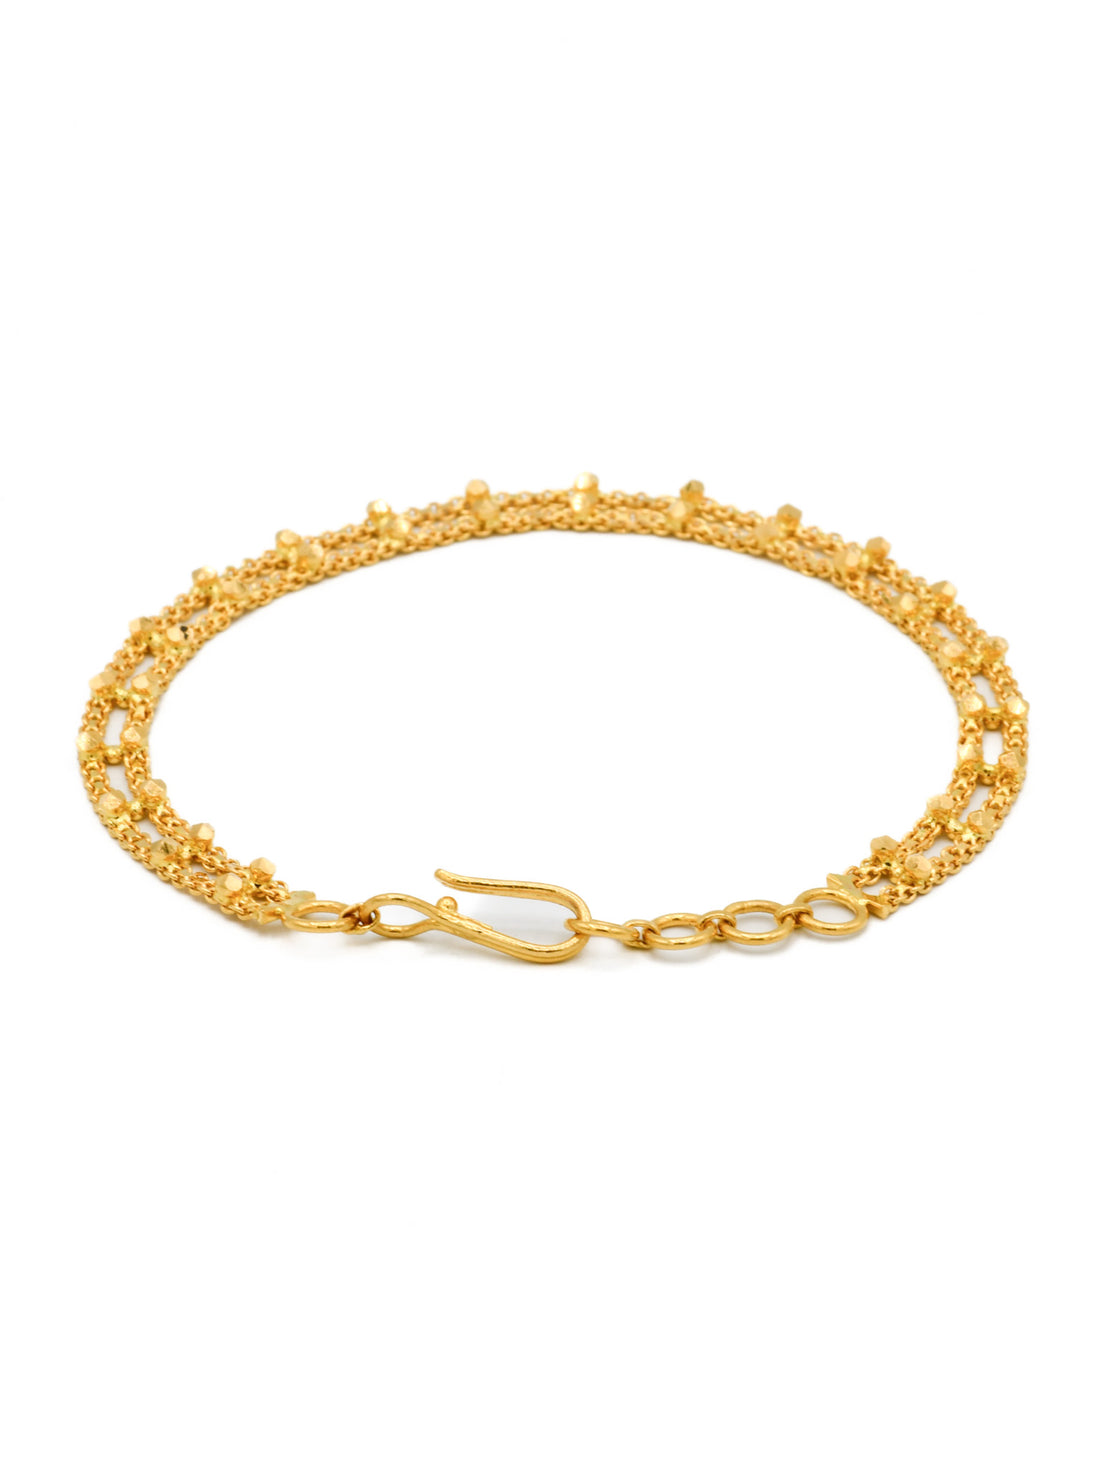 22ct Gold 2 Row Ladies Bracelet - Roop Darshan